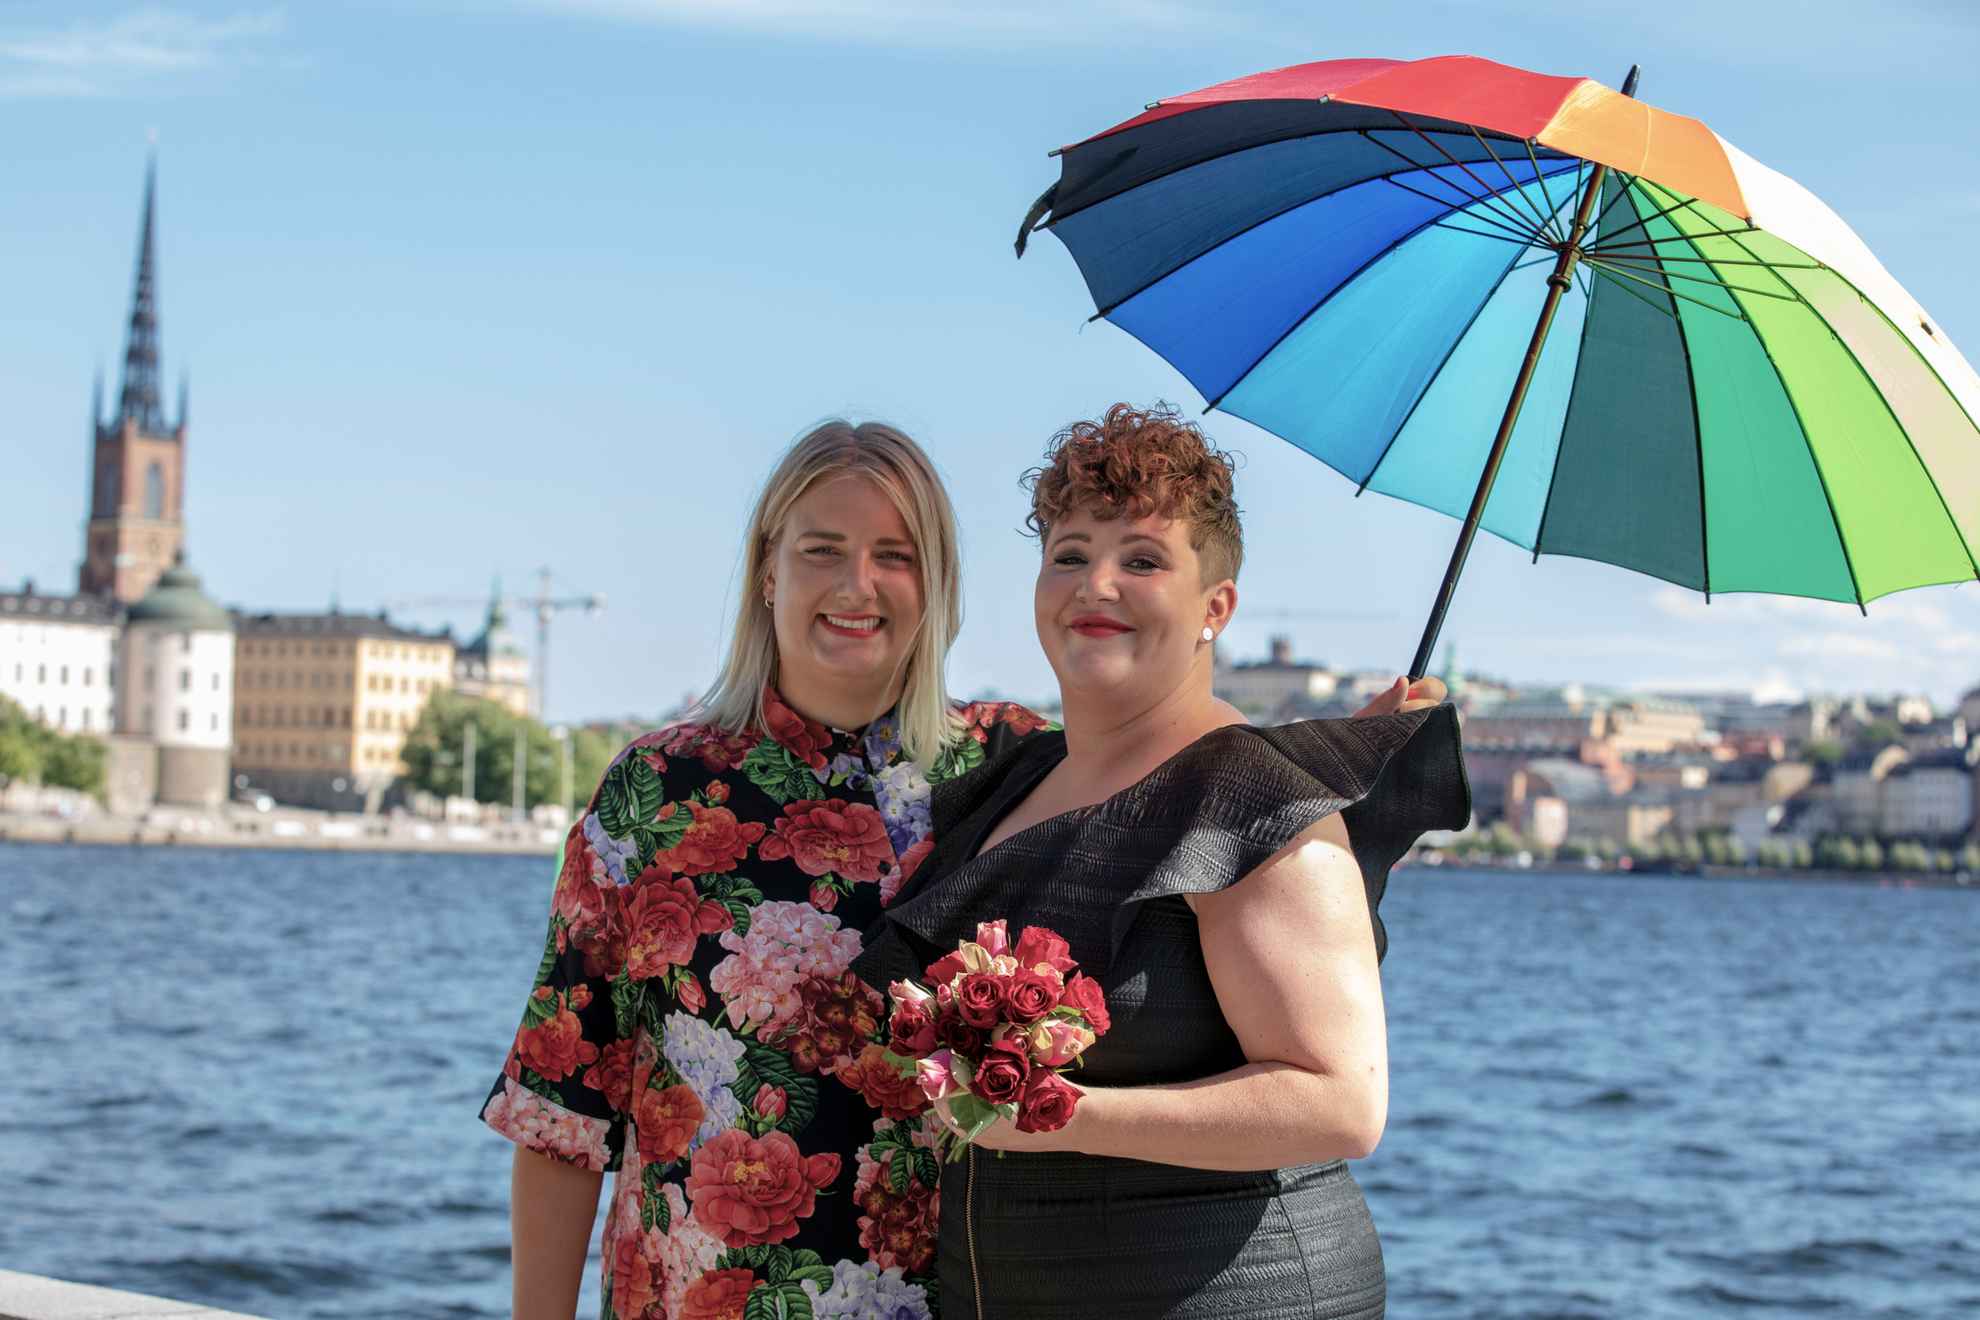 Zwei Frauen, eine in einem schwarzen Kleid und eine mit einem blumengemusterten Hemd, halten einen Regenschirm in den Farben des Regenbogens. Sie stehen am Wasser mit Blick auf die Stadt Stockholm im Hintergrund.